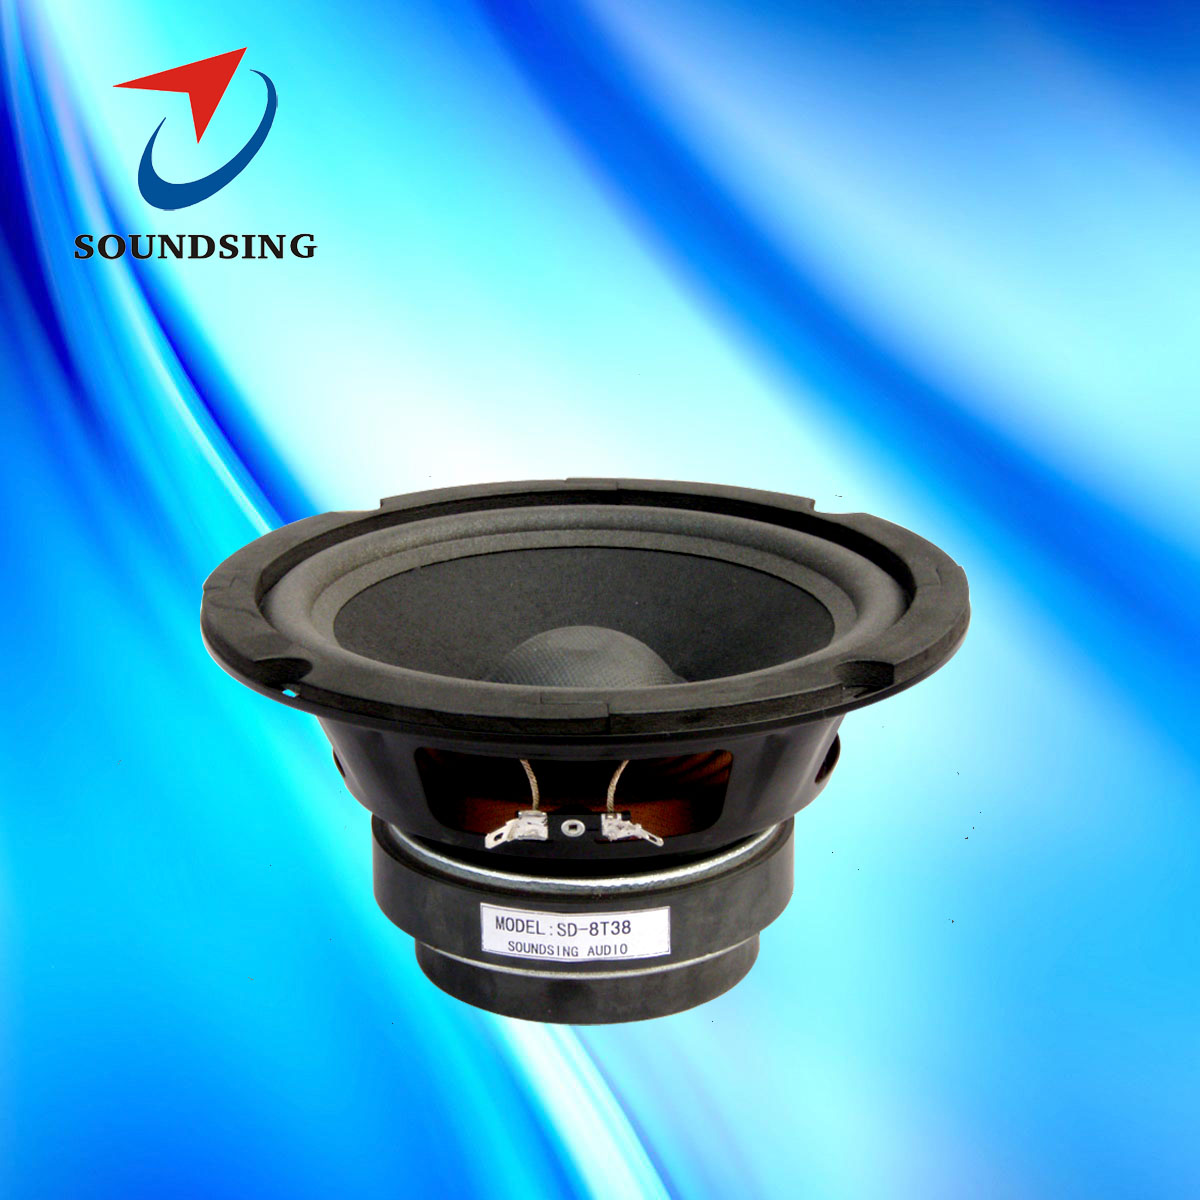 SD-8T38 8"karaoke speakers